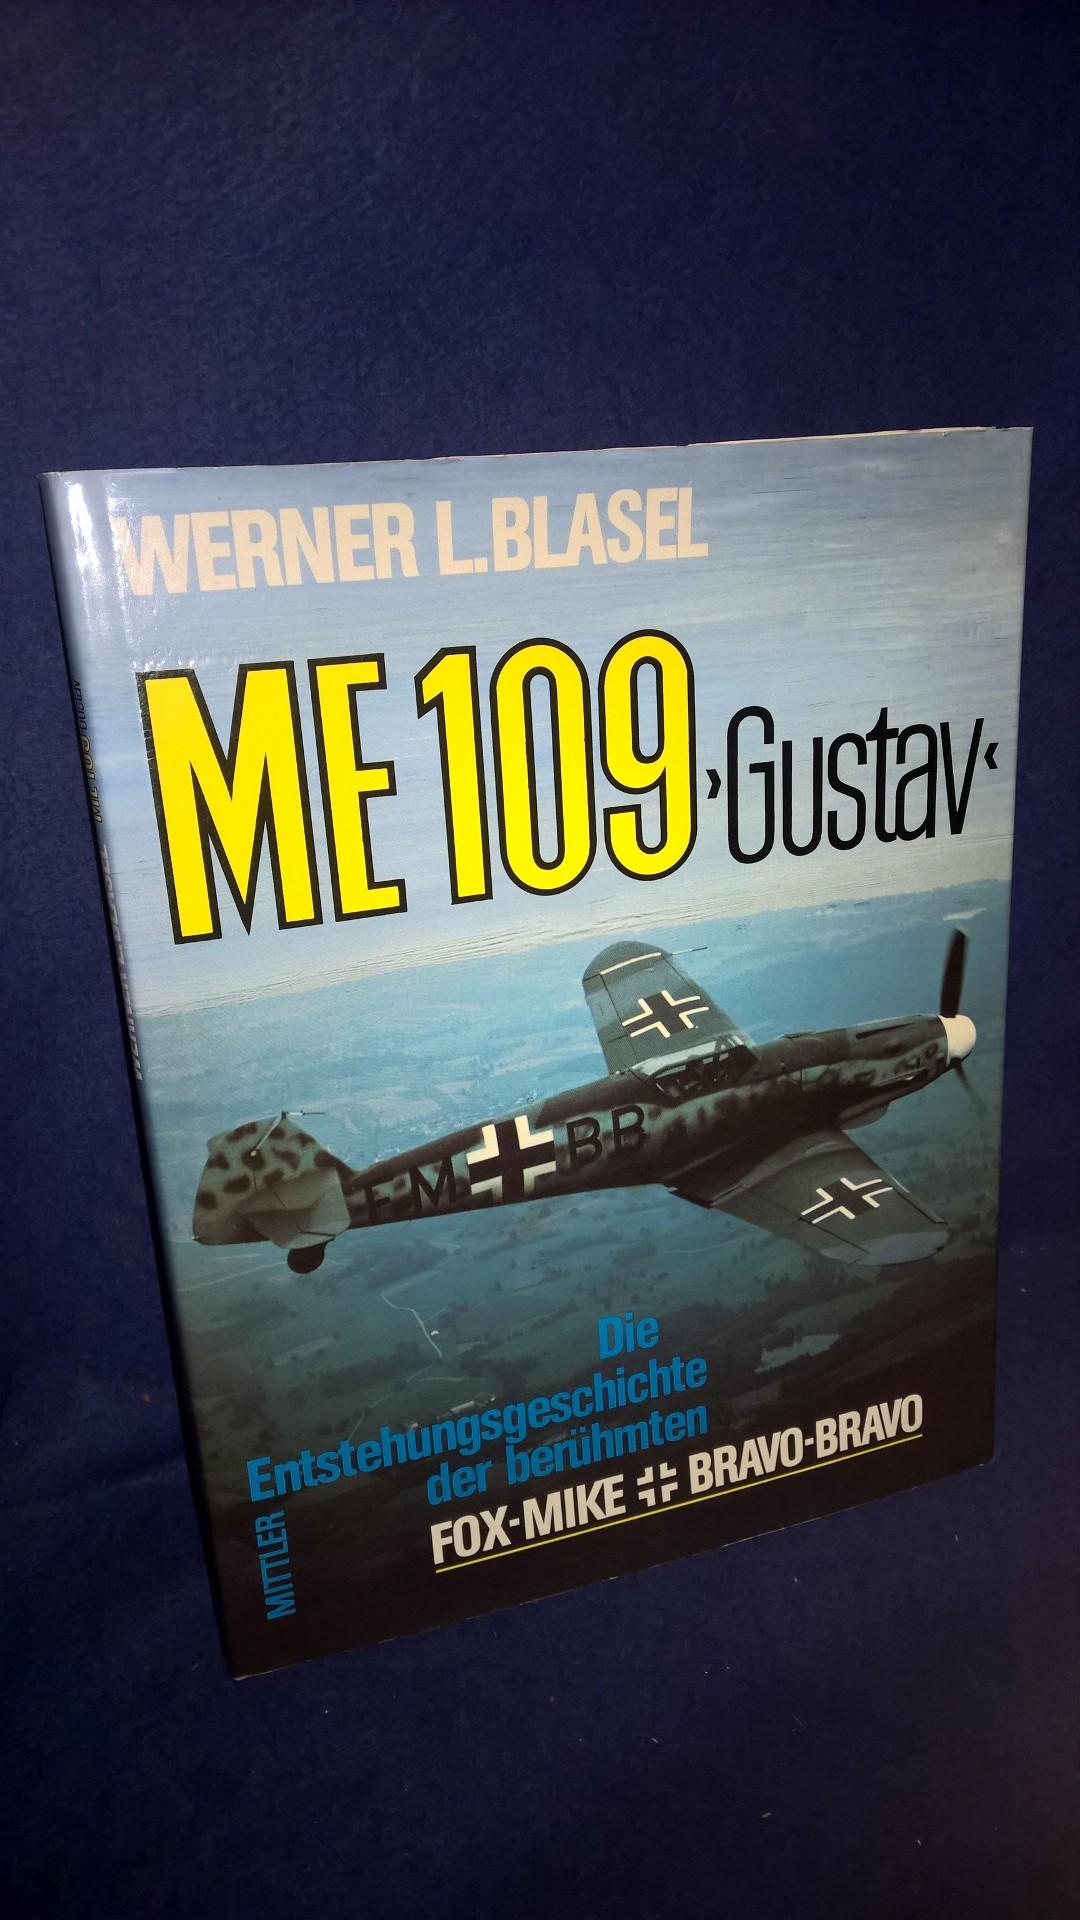 ME 109 Gustav. Die Entstehungsgeschichte der berühmten Fox-Mike Bravo-Bravo.